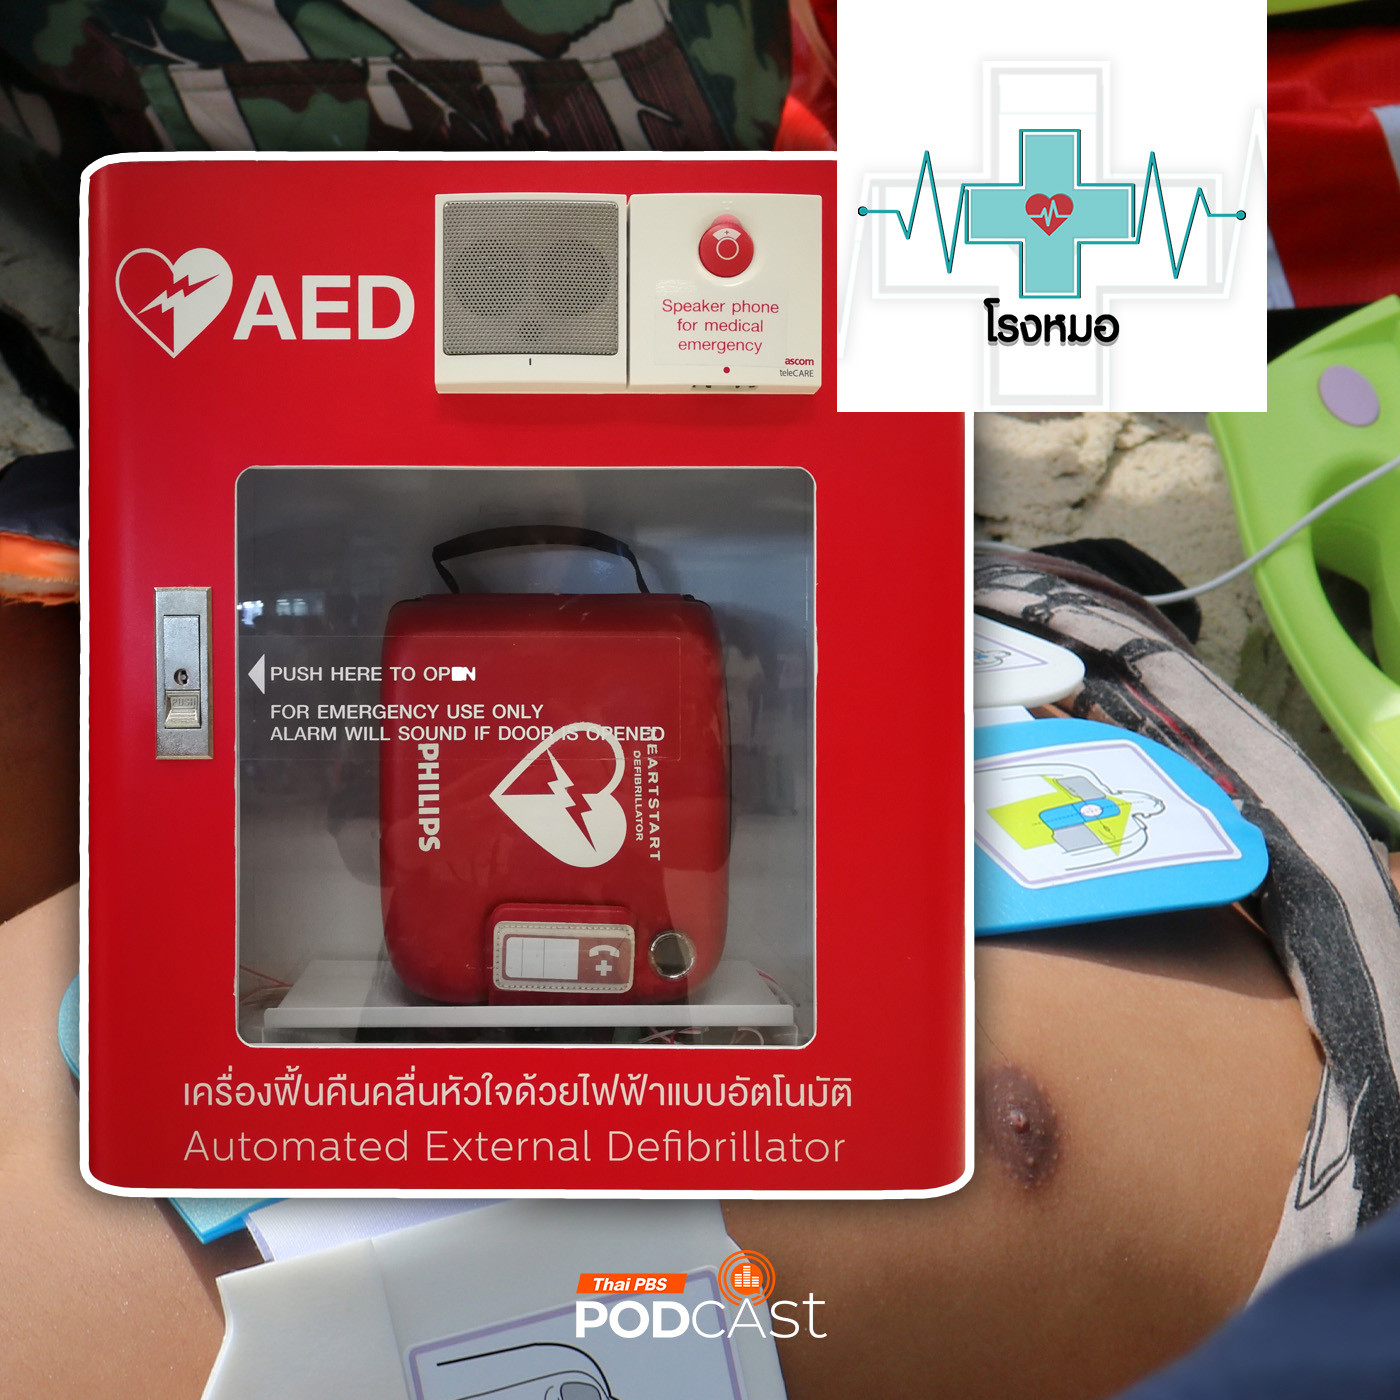 โรงหมอ EP. 947: เหตุฉุกเฉินกับการใช้เครื่องเออีดี (AED) เพิ่มโอกาสรอดชีวิต